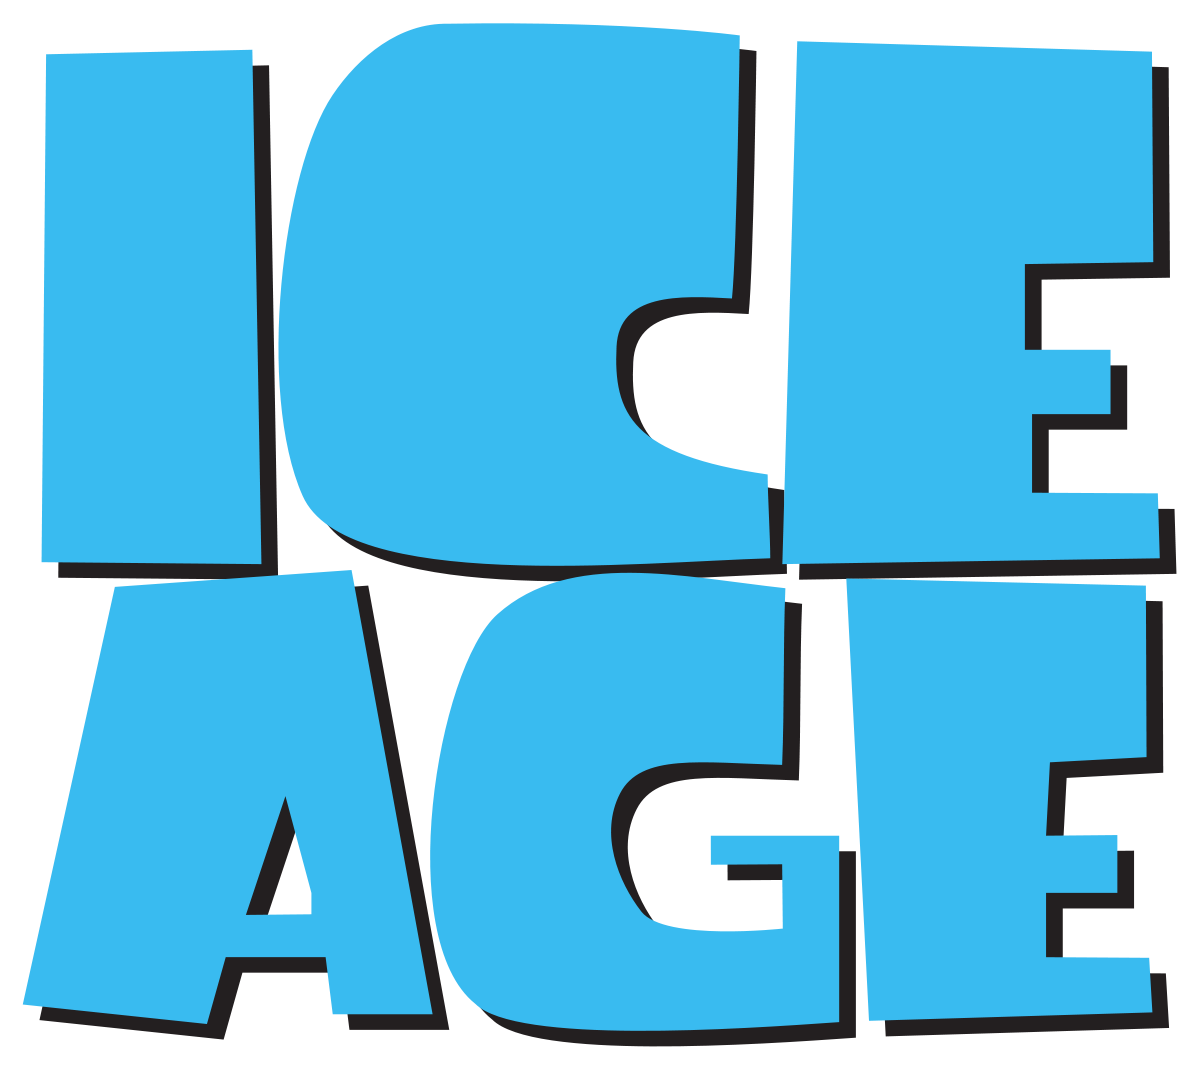 Ice Age Franchise Wikipedia